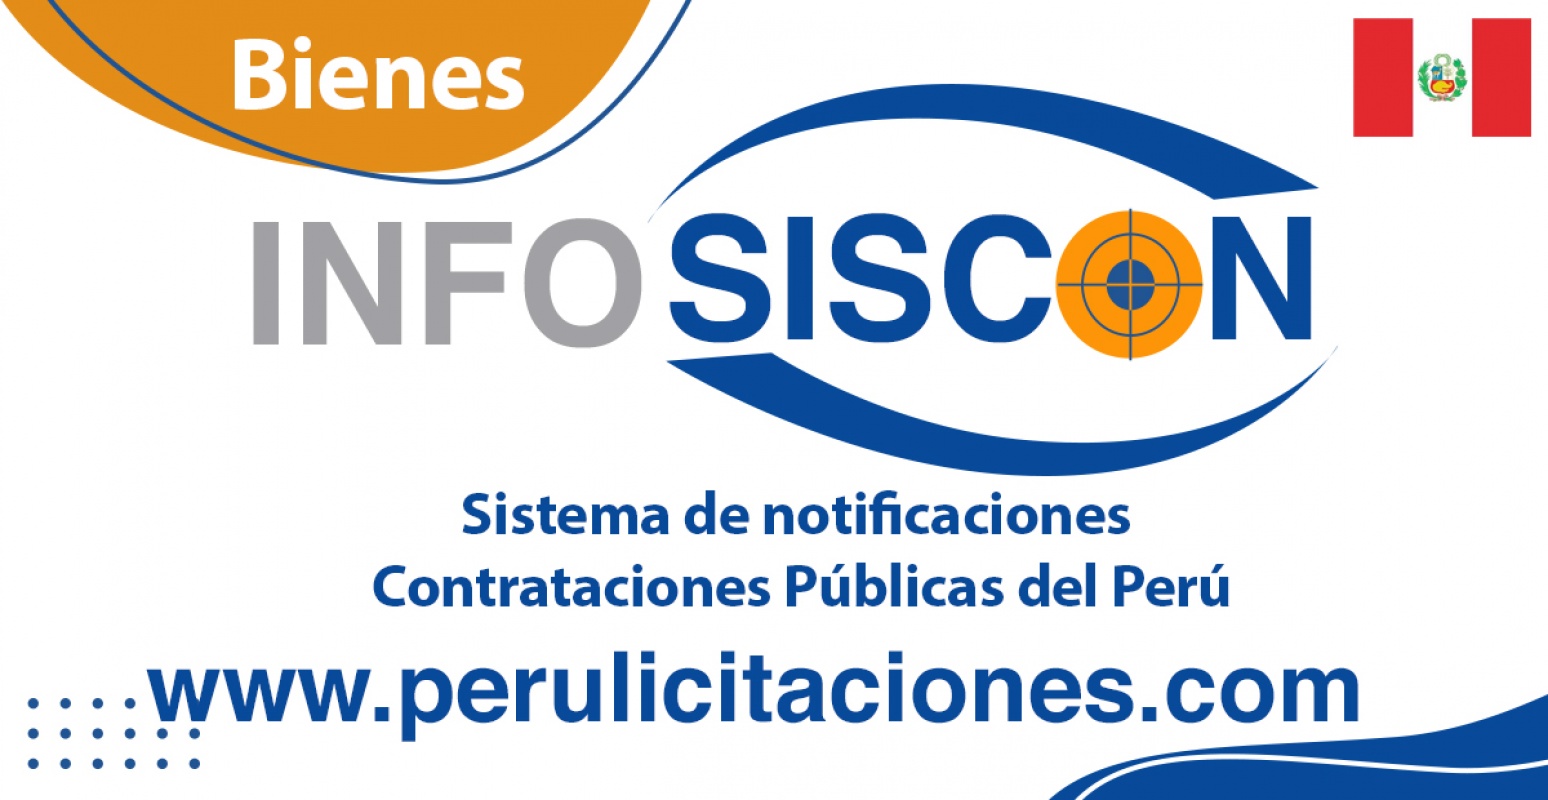 www.perulicitaciones.com